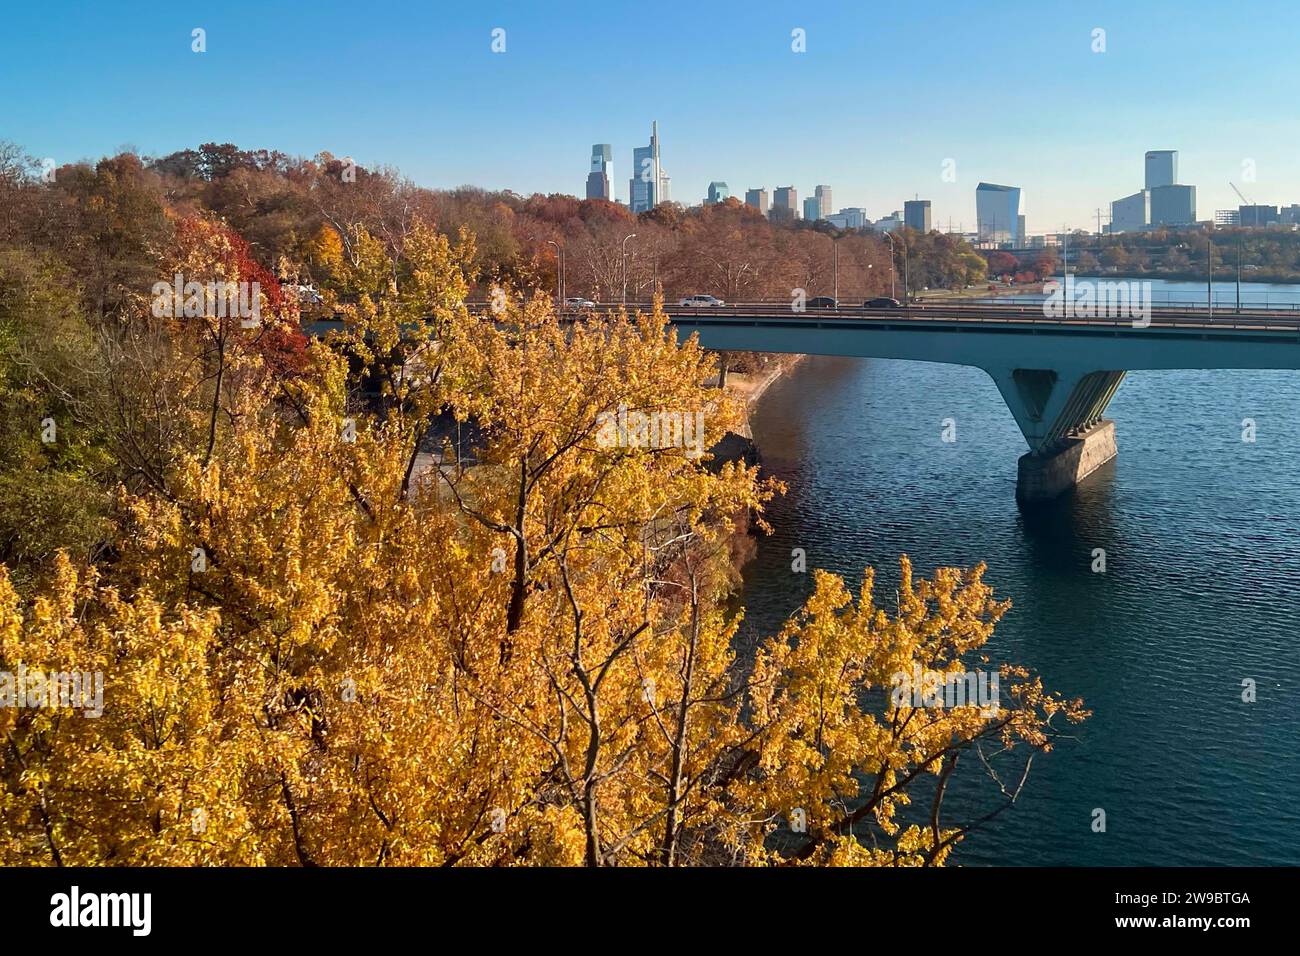 Les arbres deviennent dorés près du pont de Girard Avenue sur la rivière Schuylkill, avec l'horizon de Philadelphie en arrière-plan. Banque D'Images